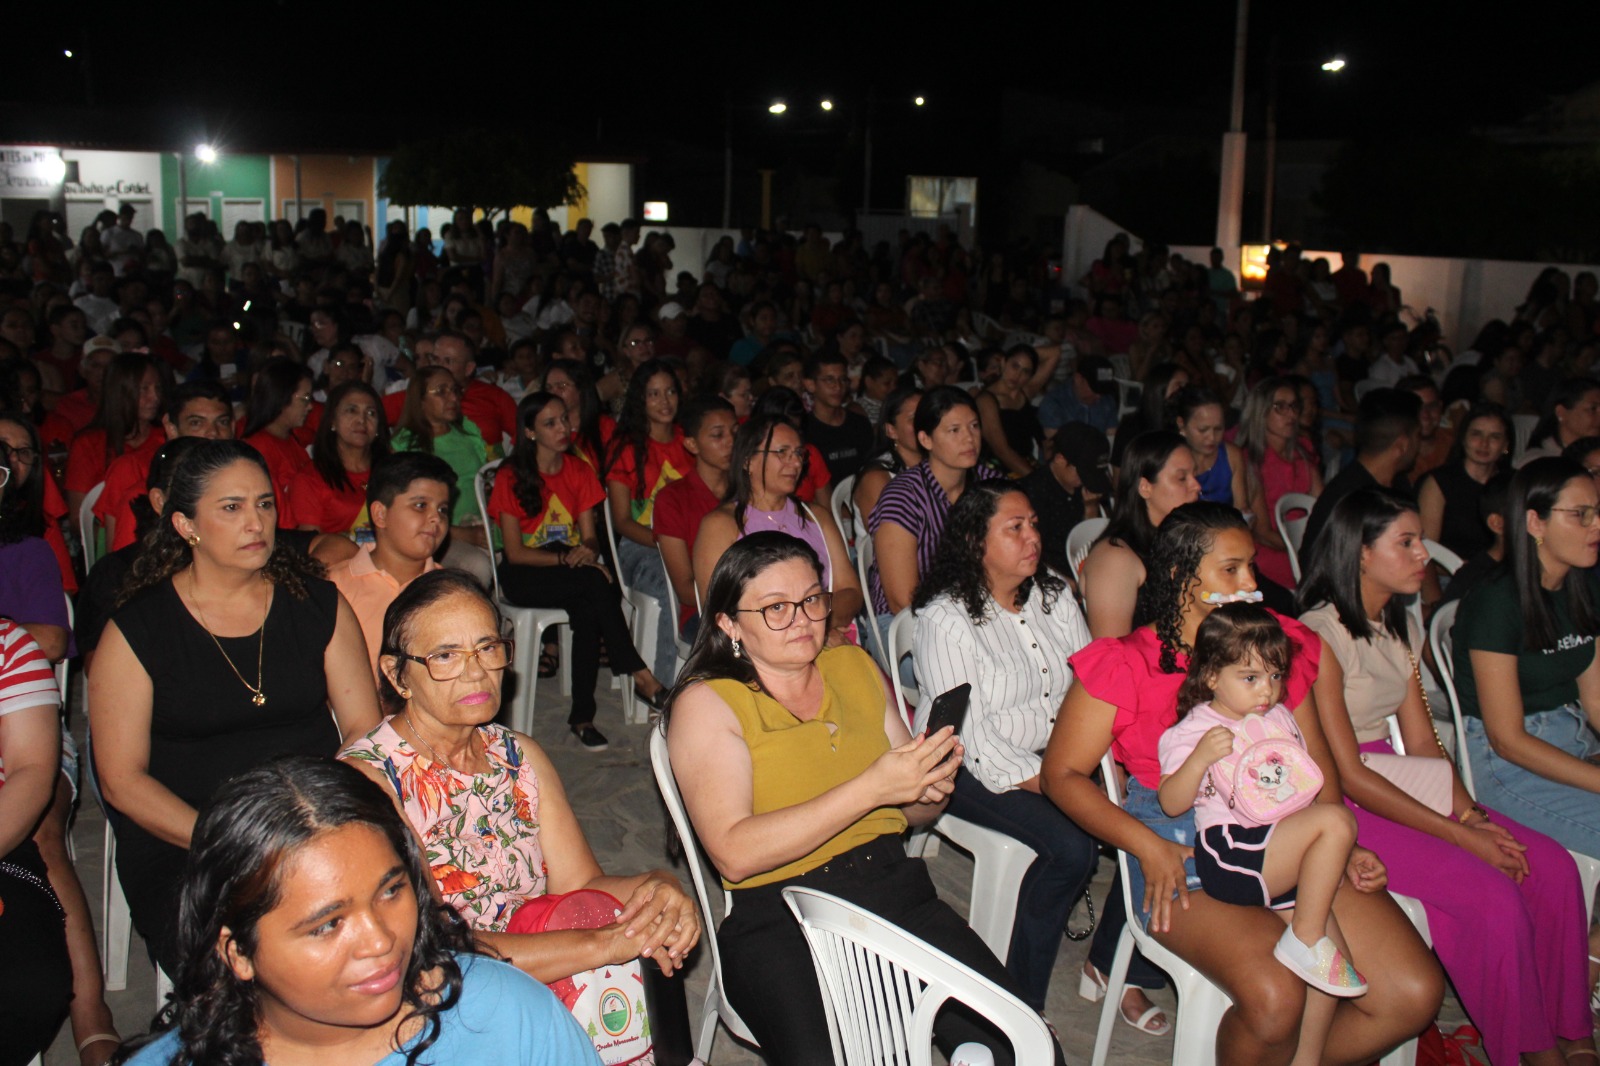 Prefeitura de Caraúbas promove Sexta Musical com homenagem a cantores nordestinos